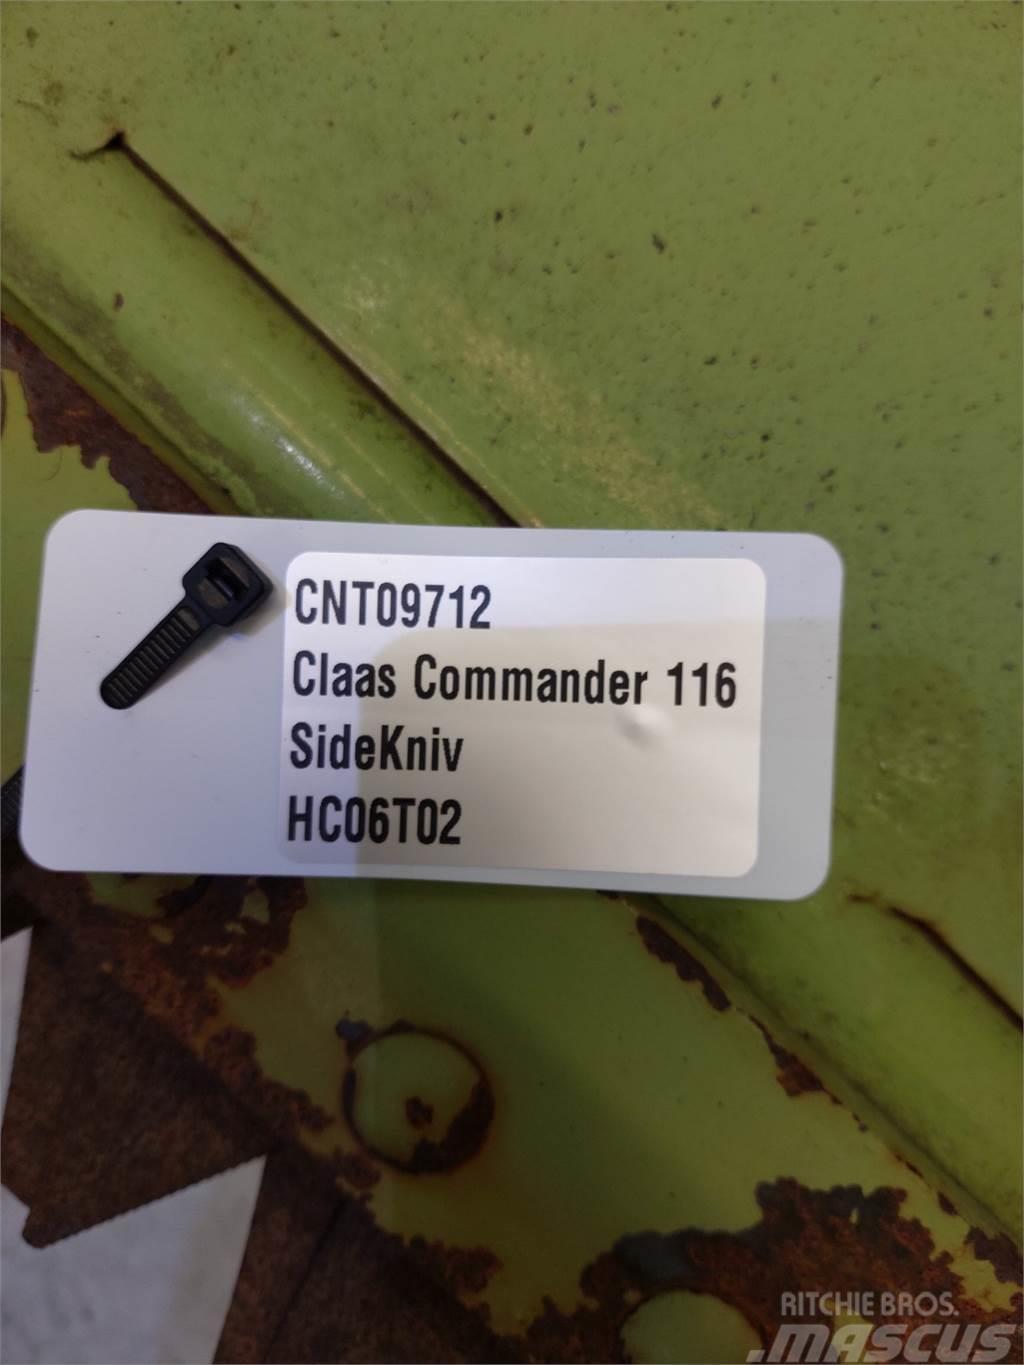 CLAAS Commandor 116 Příslušenství a náhradní díly ke kombajnům